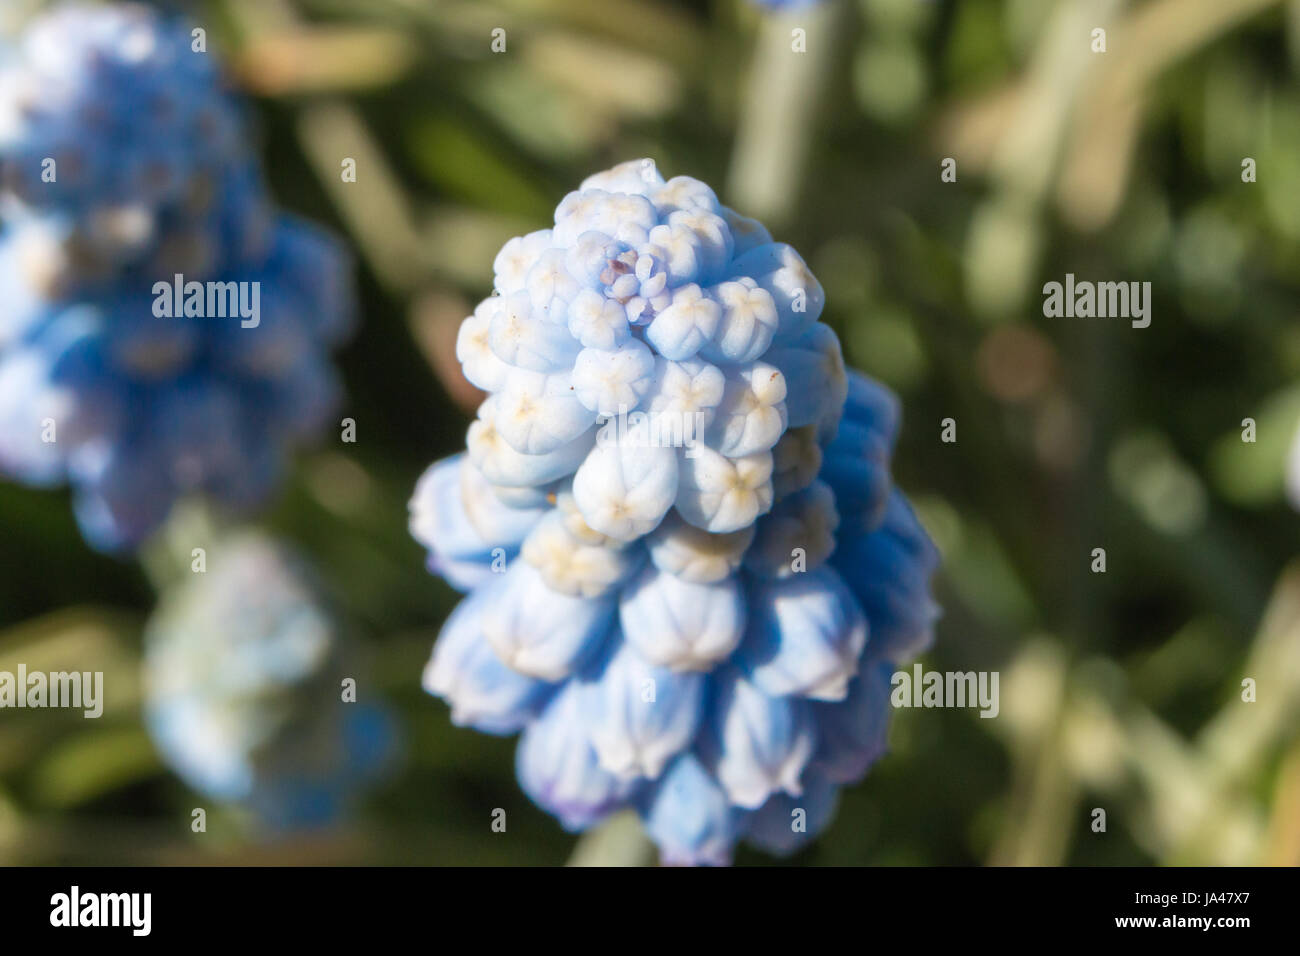 Muscari flowers Blue Magic aucheri macro view Stock Photo